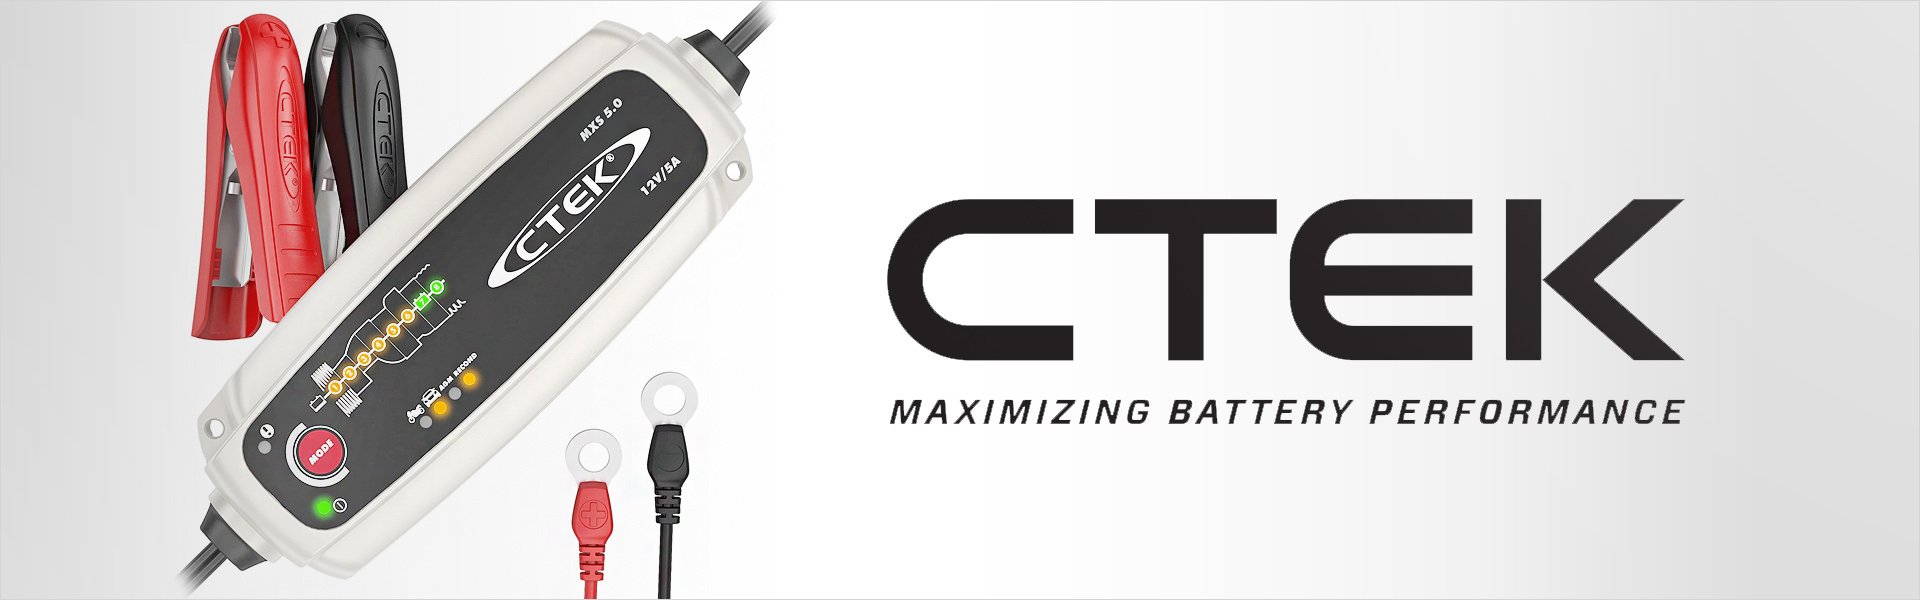 Impulss akulaadija Ctek MXS 5.0 TEST & CHARGE Ctek®